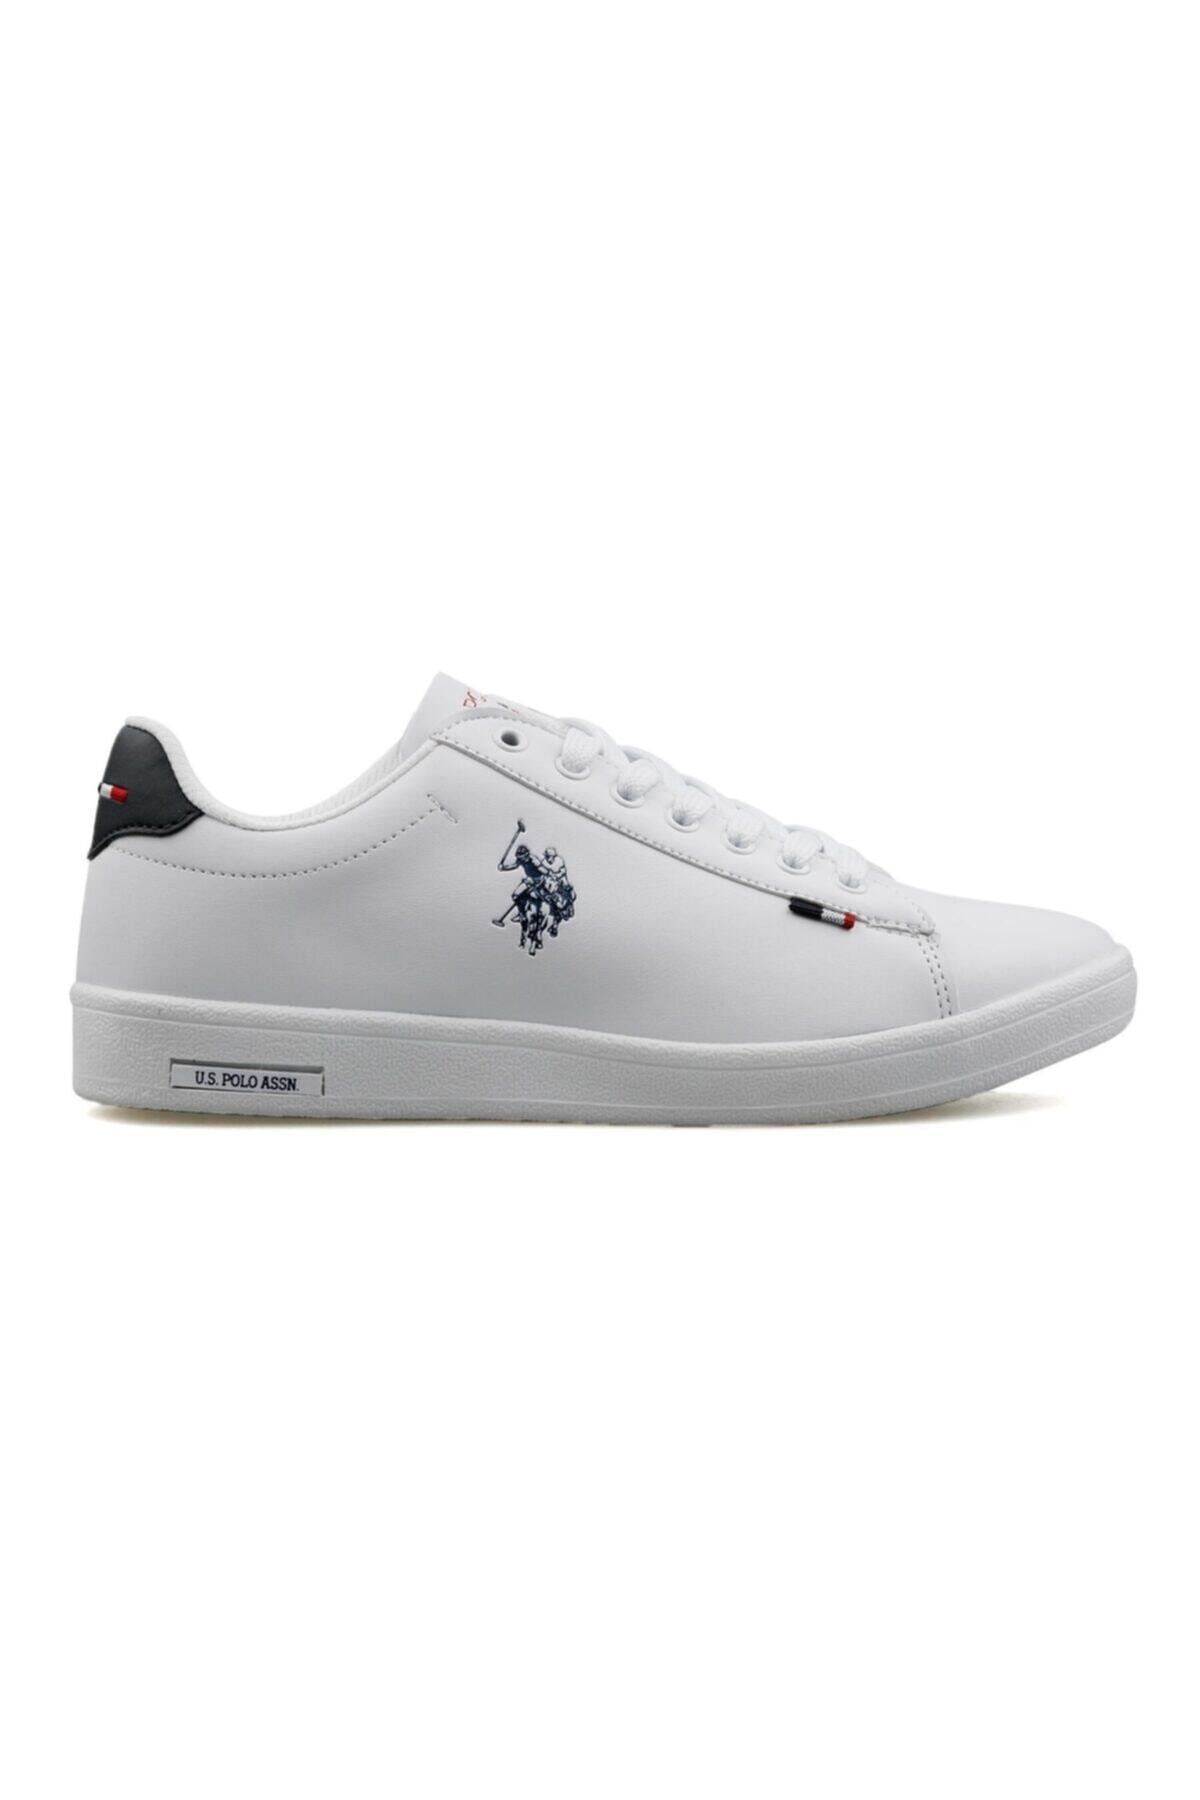 U.S. Polo Assn. FRANCO DHM Beyaz Kadın Sneaker Ayakkabı 100548974